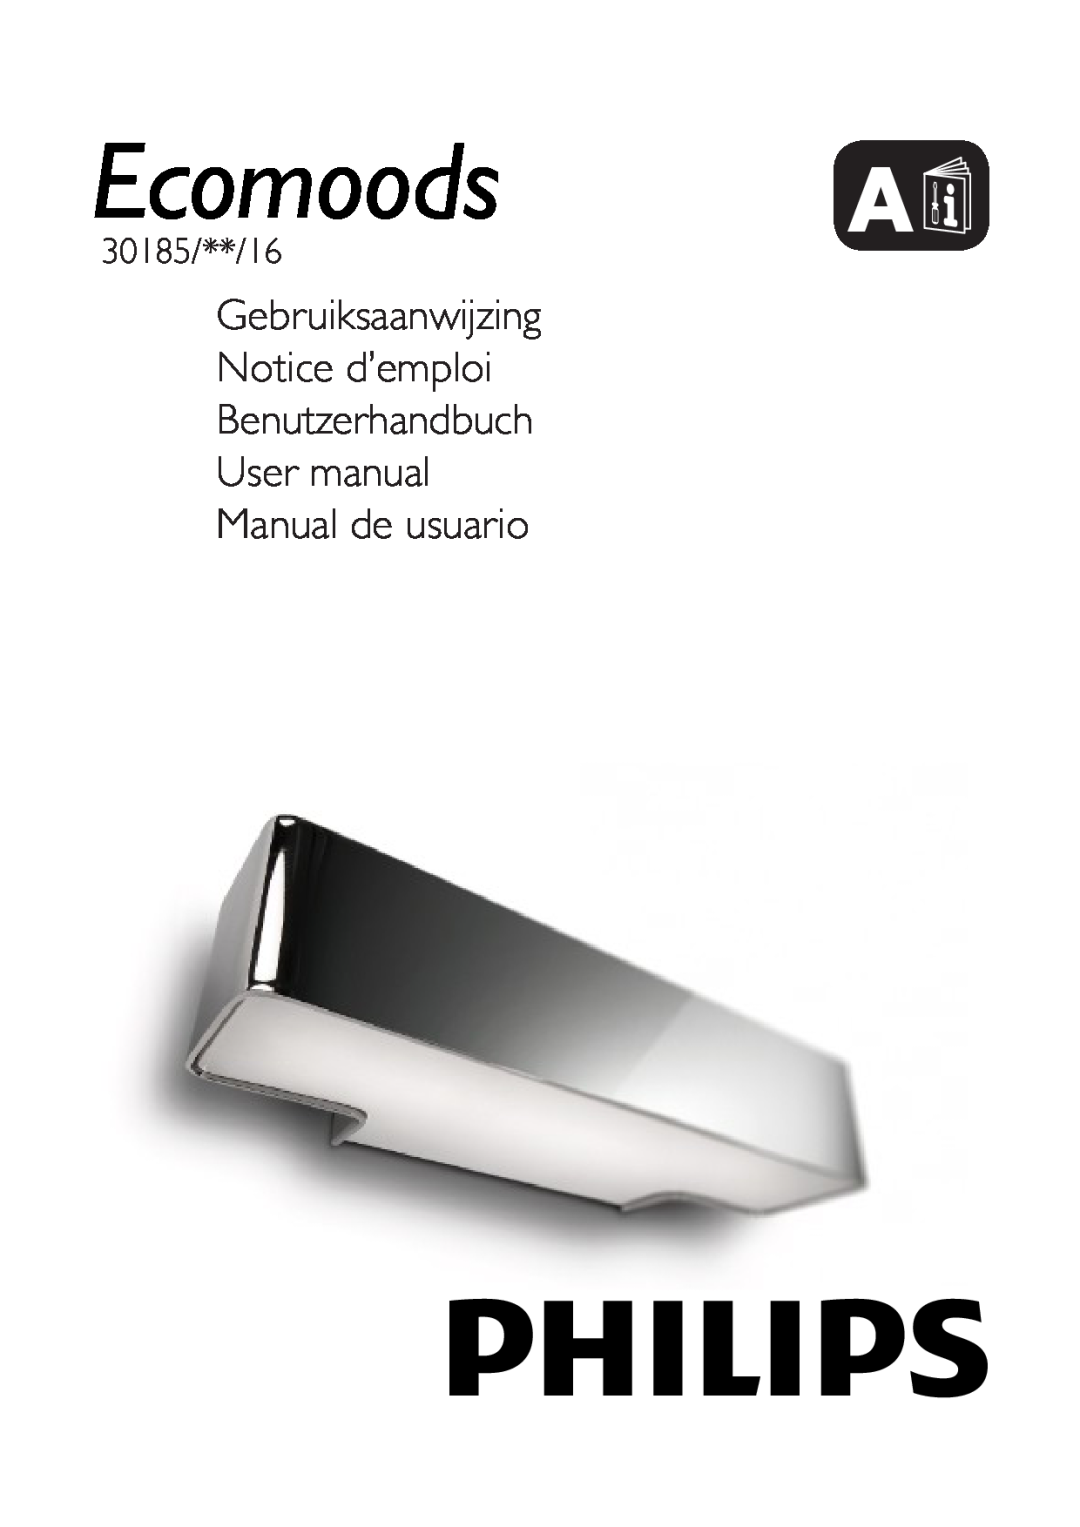 Philips 30185/**/16 user manual Gebruiksaanwijzing Notice d’emploi, Benutzerhandbuch User manual Manual de usuario 